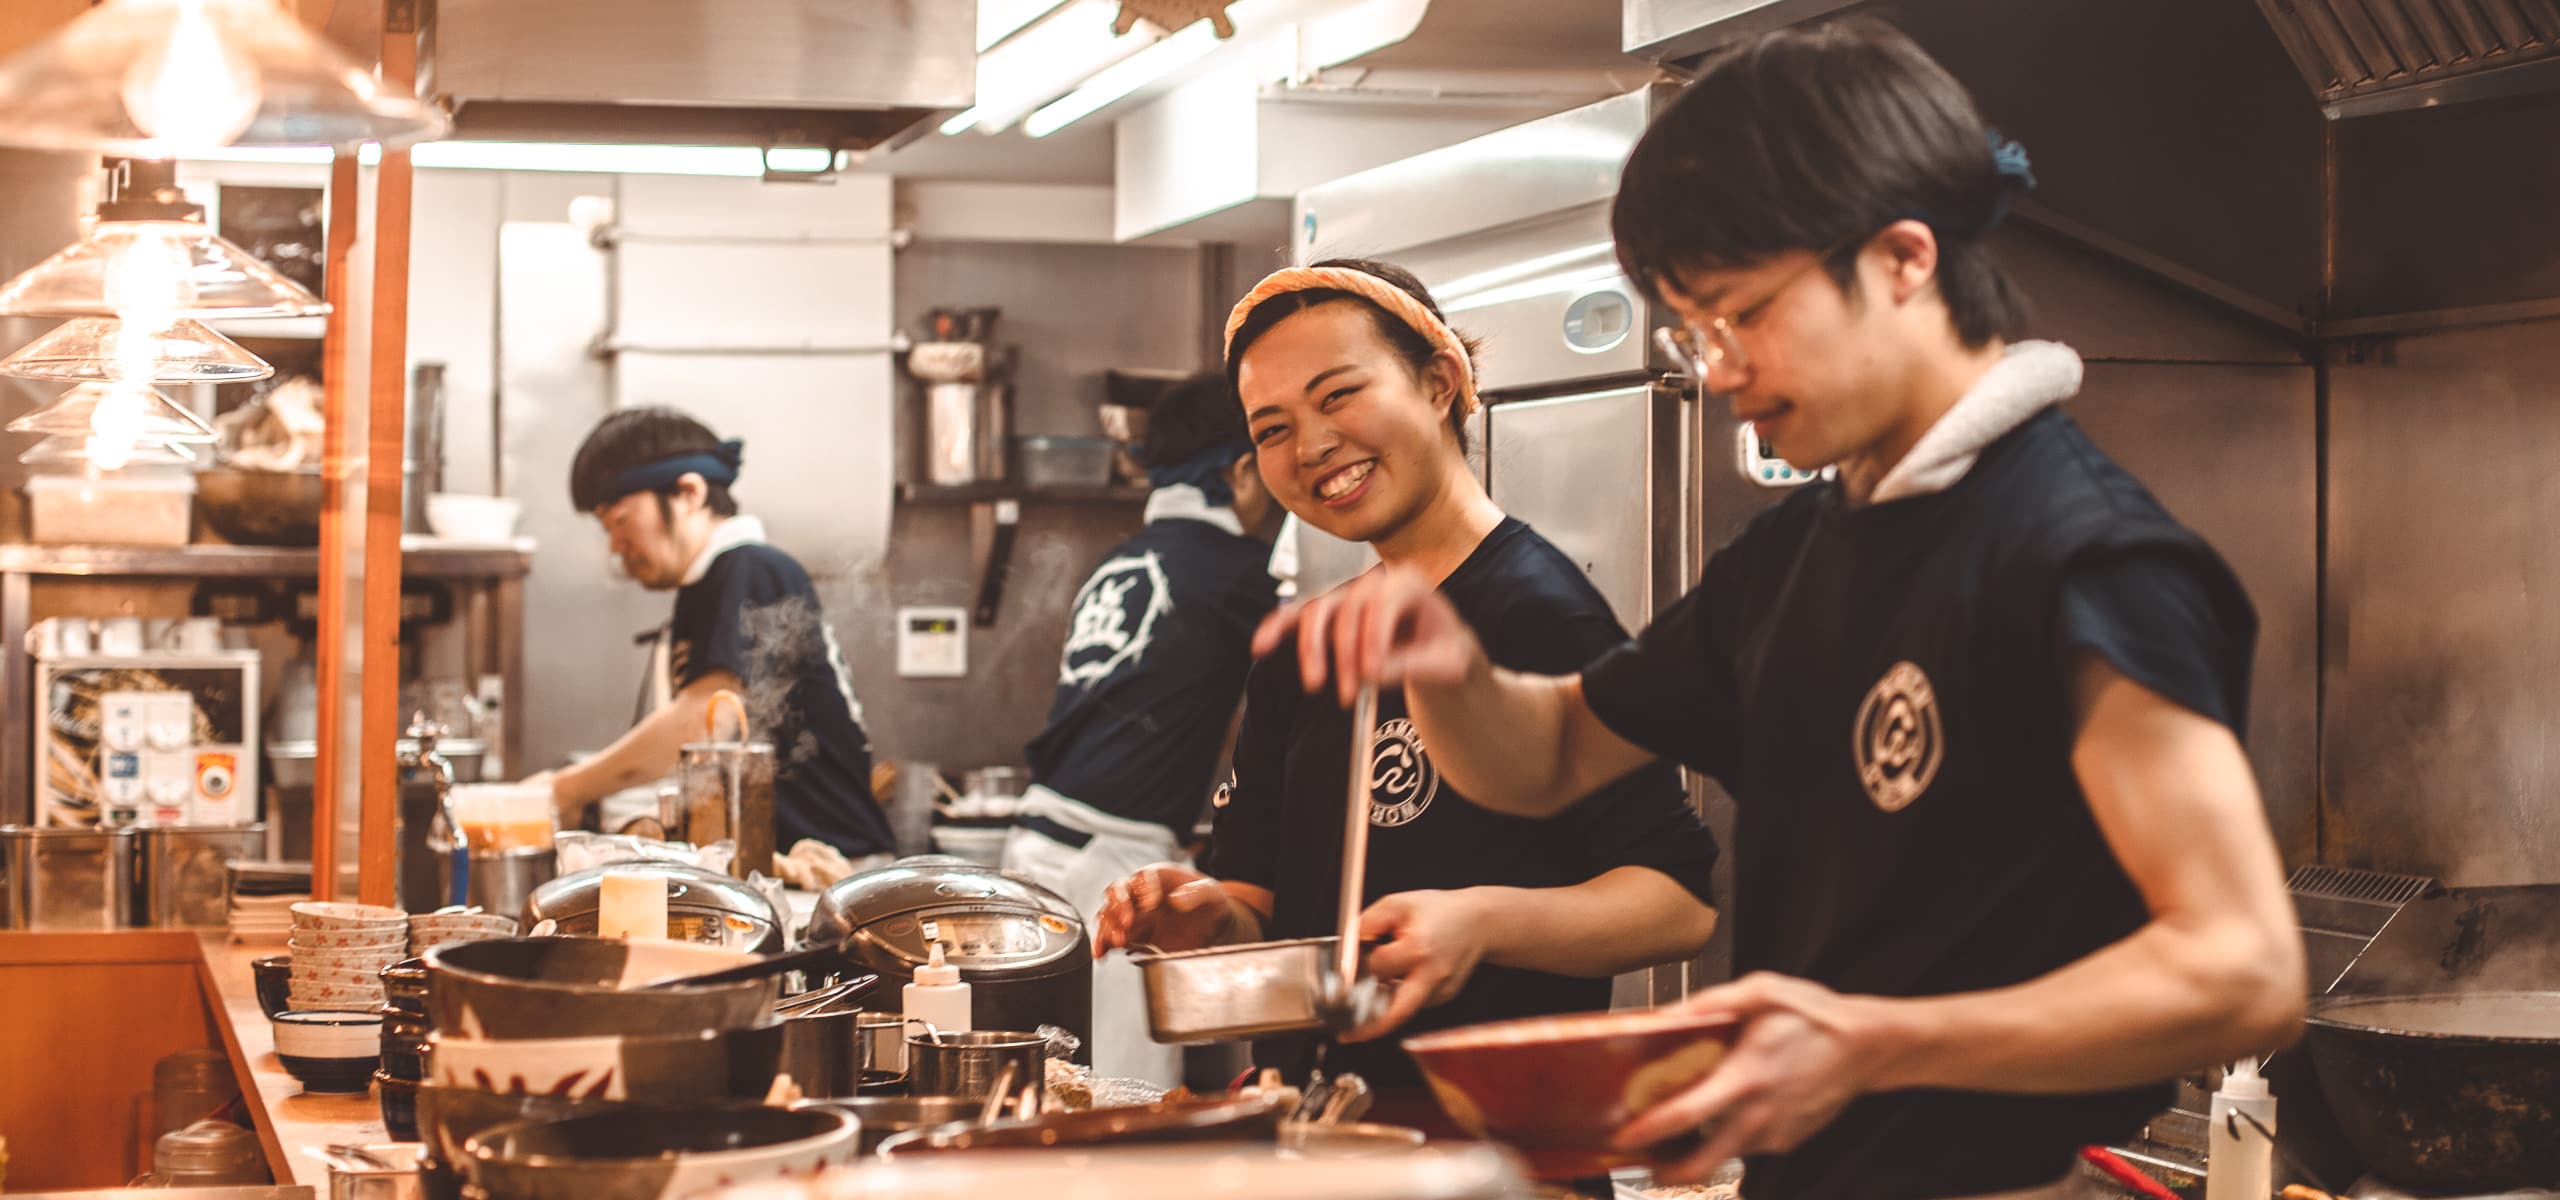 Chefs in the kitchen making ramen in Tokyo, Japan